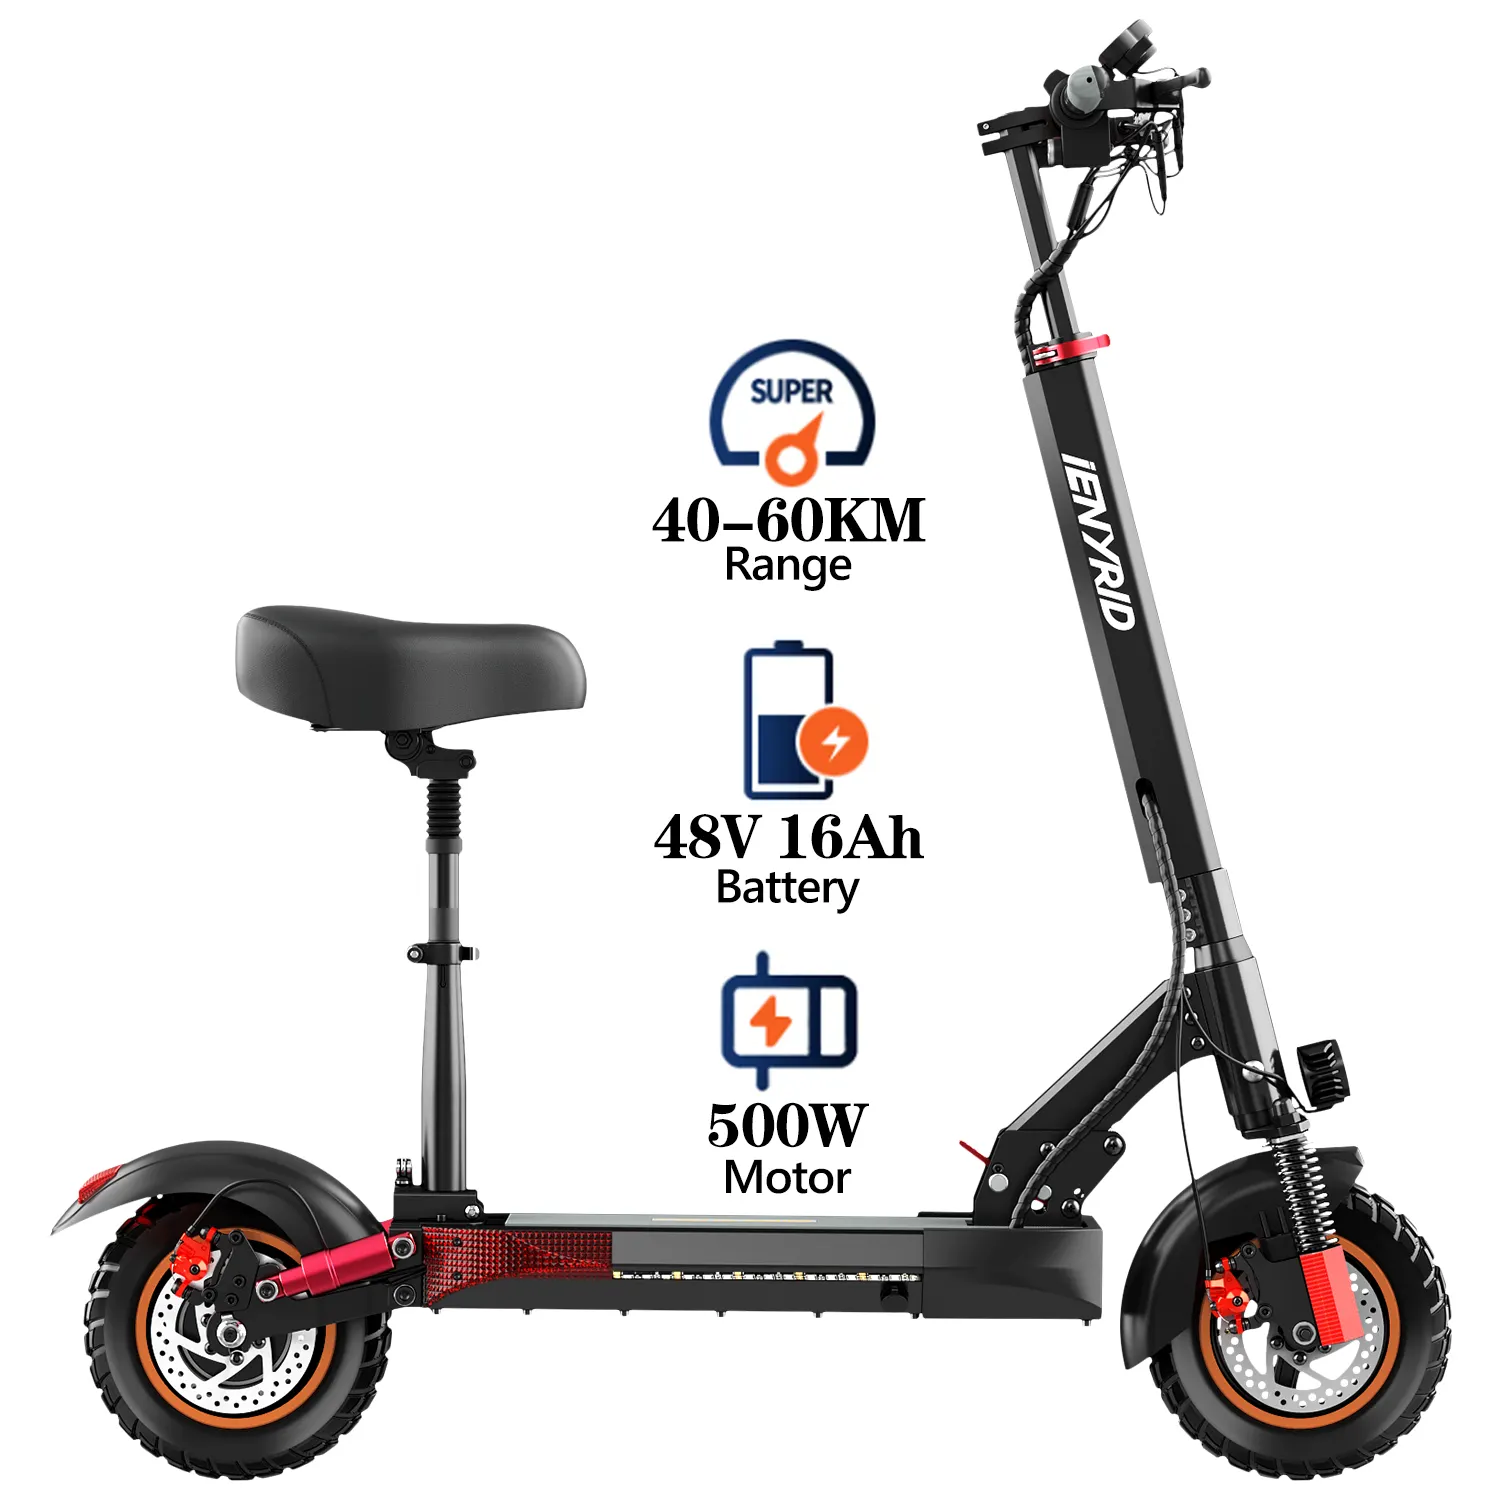 [Eu stok] yeni stil Kugoo IE KUGOO M4 Pro S 48v 16Ah 500W yüksek hızlı 2 tekerlekli yetişkin elektrikli scooter koltuk scooter ile satılık